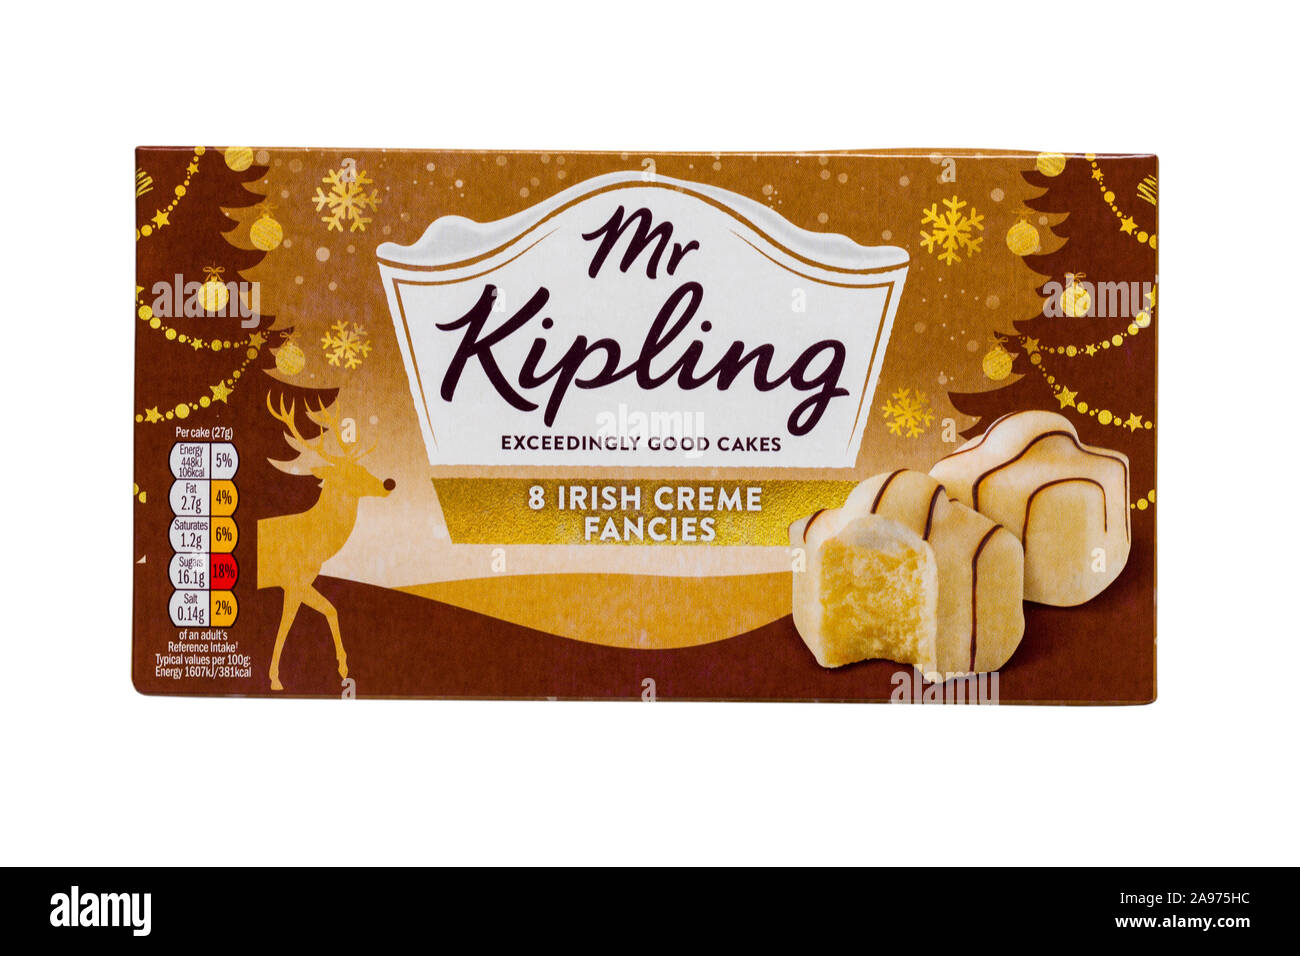 Fort de Mr Kipling 8 fantaisies de crème irlandaise extrêmement bons gâteaux isolé sur fond blanc Banque D'Images